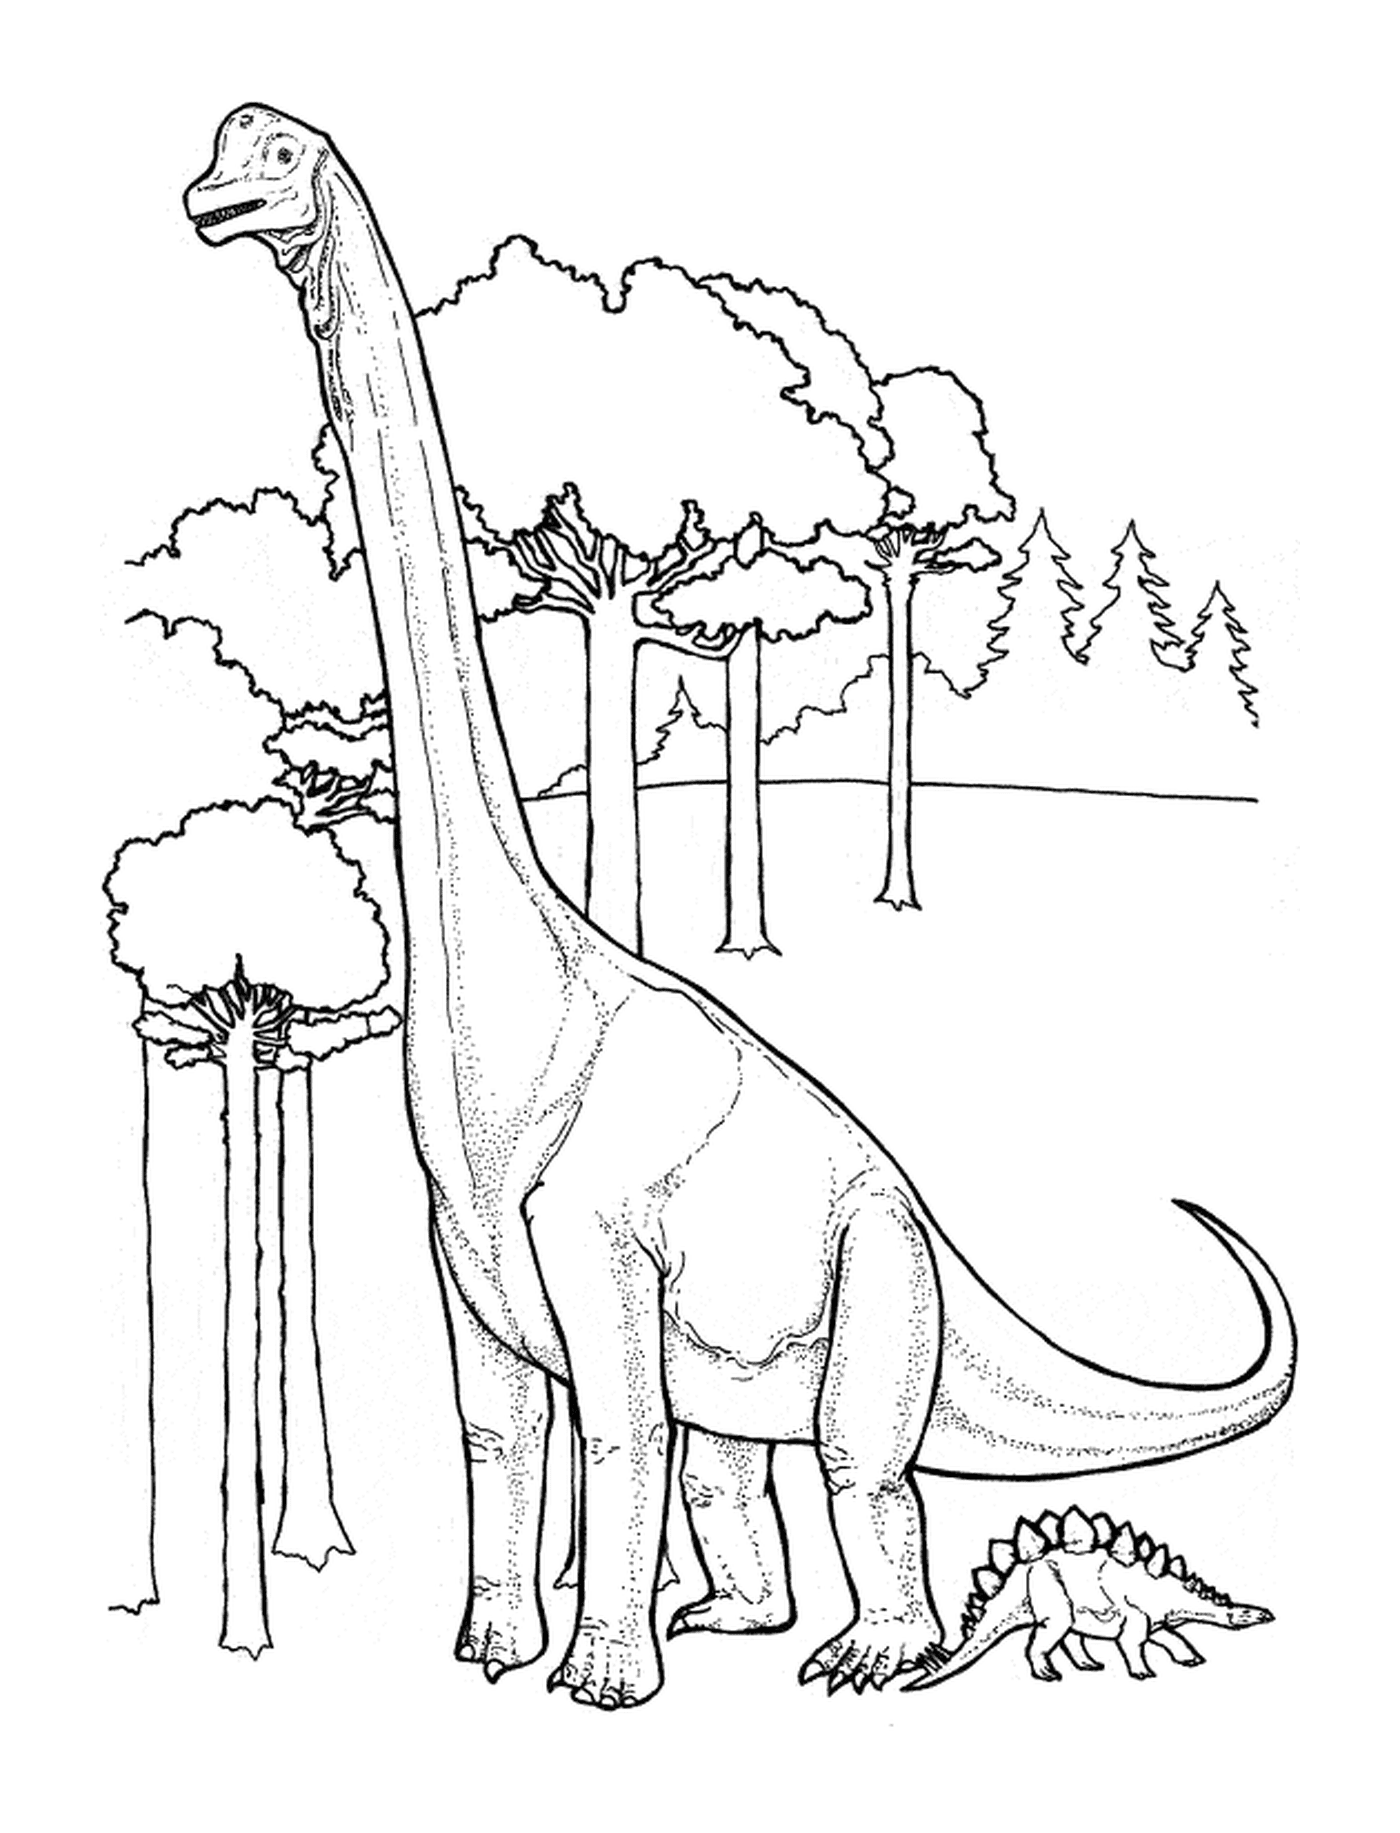  Dinosaur steht in einem üppigen Wald 